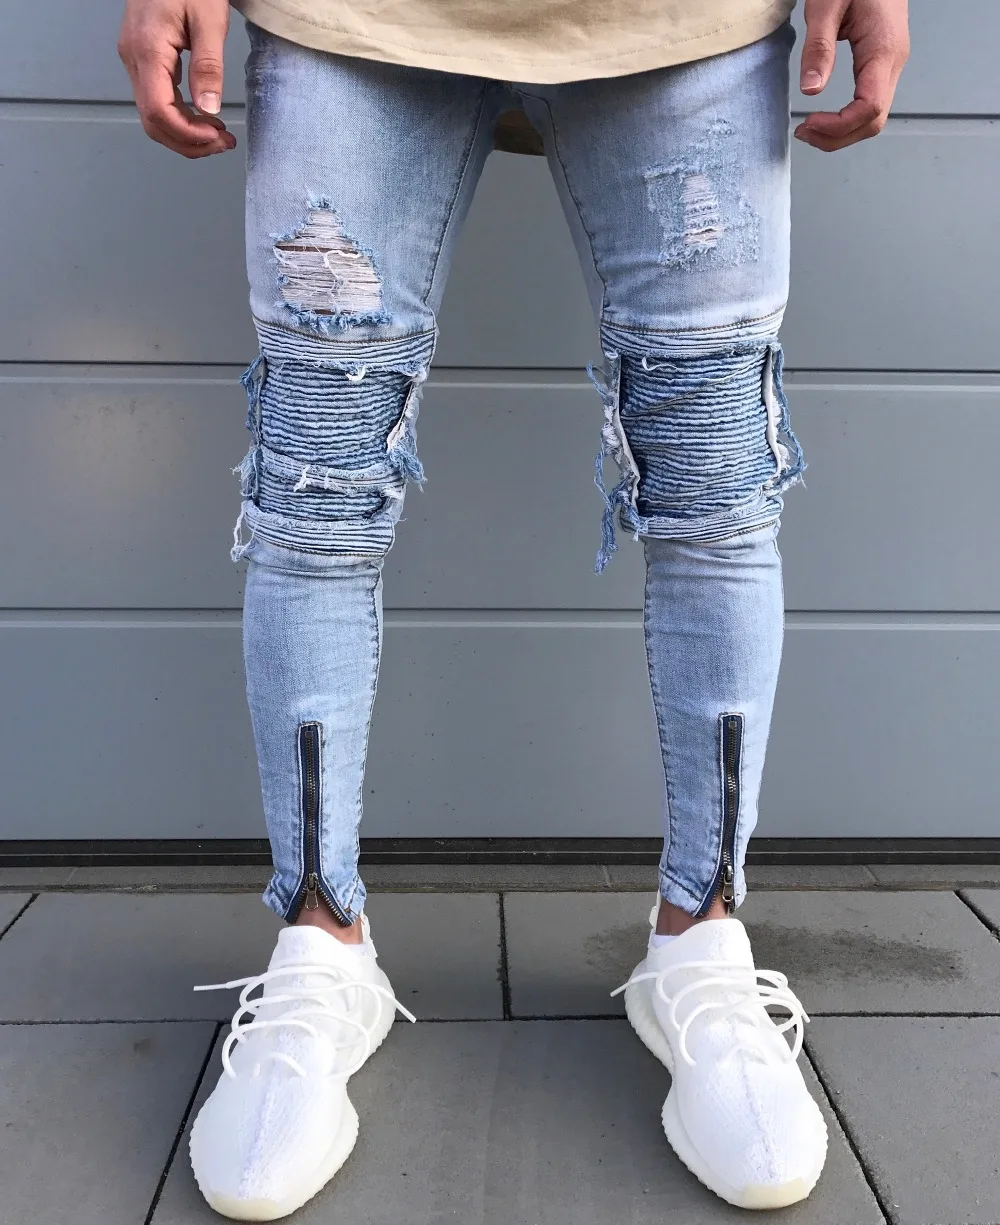 Gmancl Брендовая Дизайнерская обувь узкие Рваные джинсы Для мужчин Привет-улица Для мужчин S Distressed Denim Joggers отверстия на коленях ASOS уничтожено